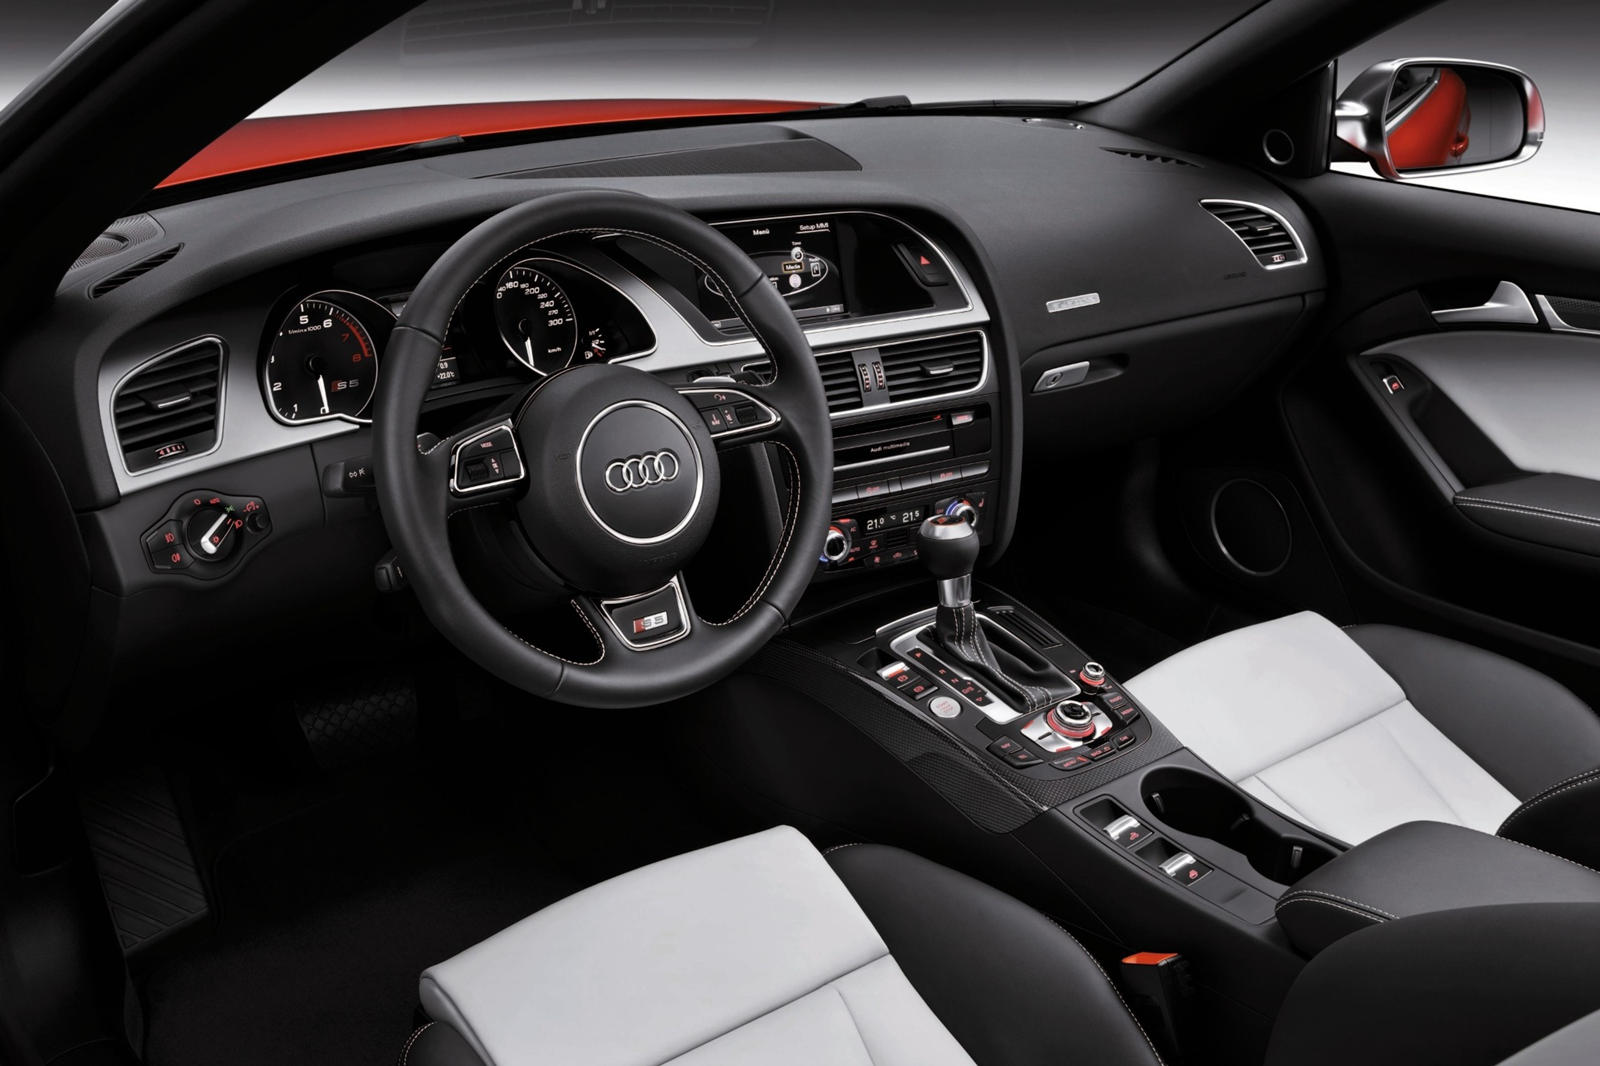 2013 Audi S5 Convertible Dashboard